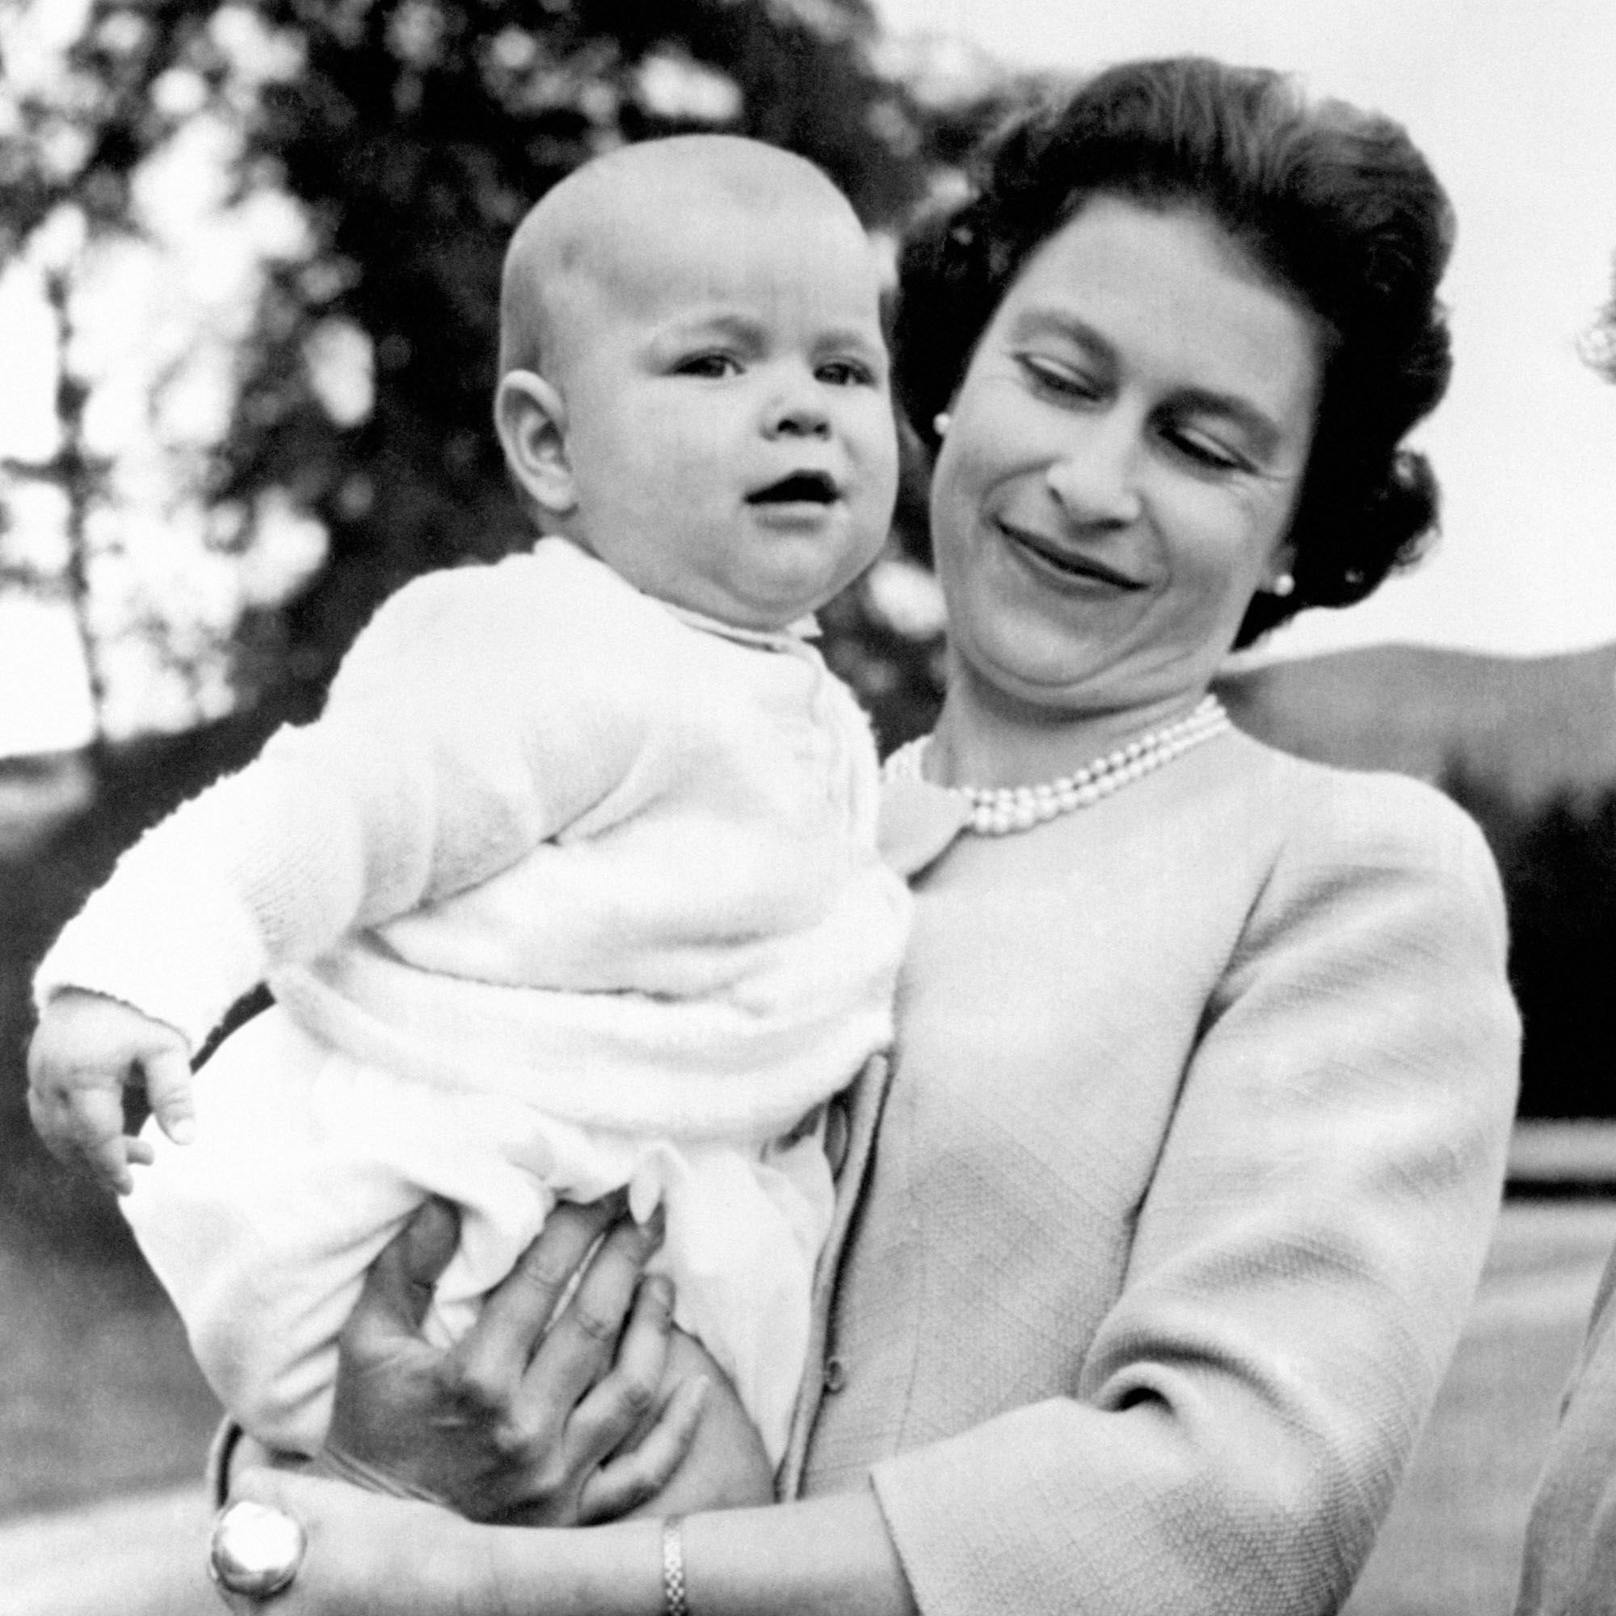 08.11.1960: Königin Elizabeth II. mit Prinz Andrew im Arm während eines Ausflugs in den Anlagen von Balmoral, Schottland. Er war das erste Kind, das seit 103 Jahren von einem regierenden Monarchen geboren wurde.